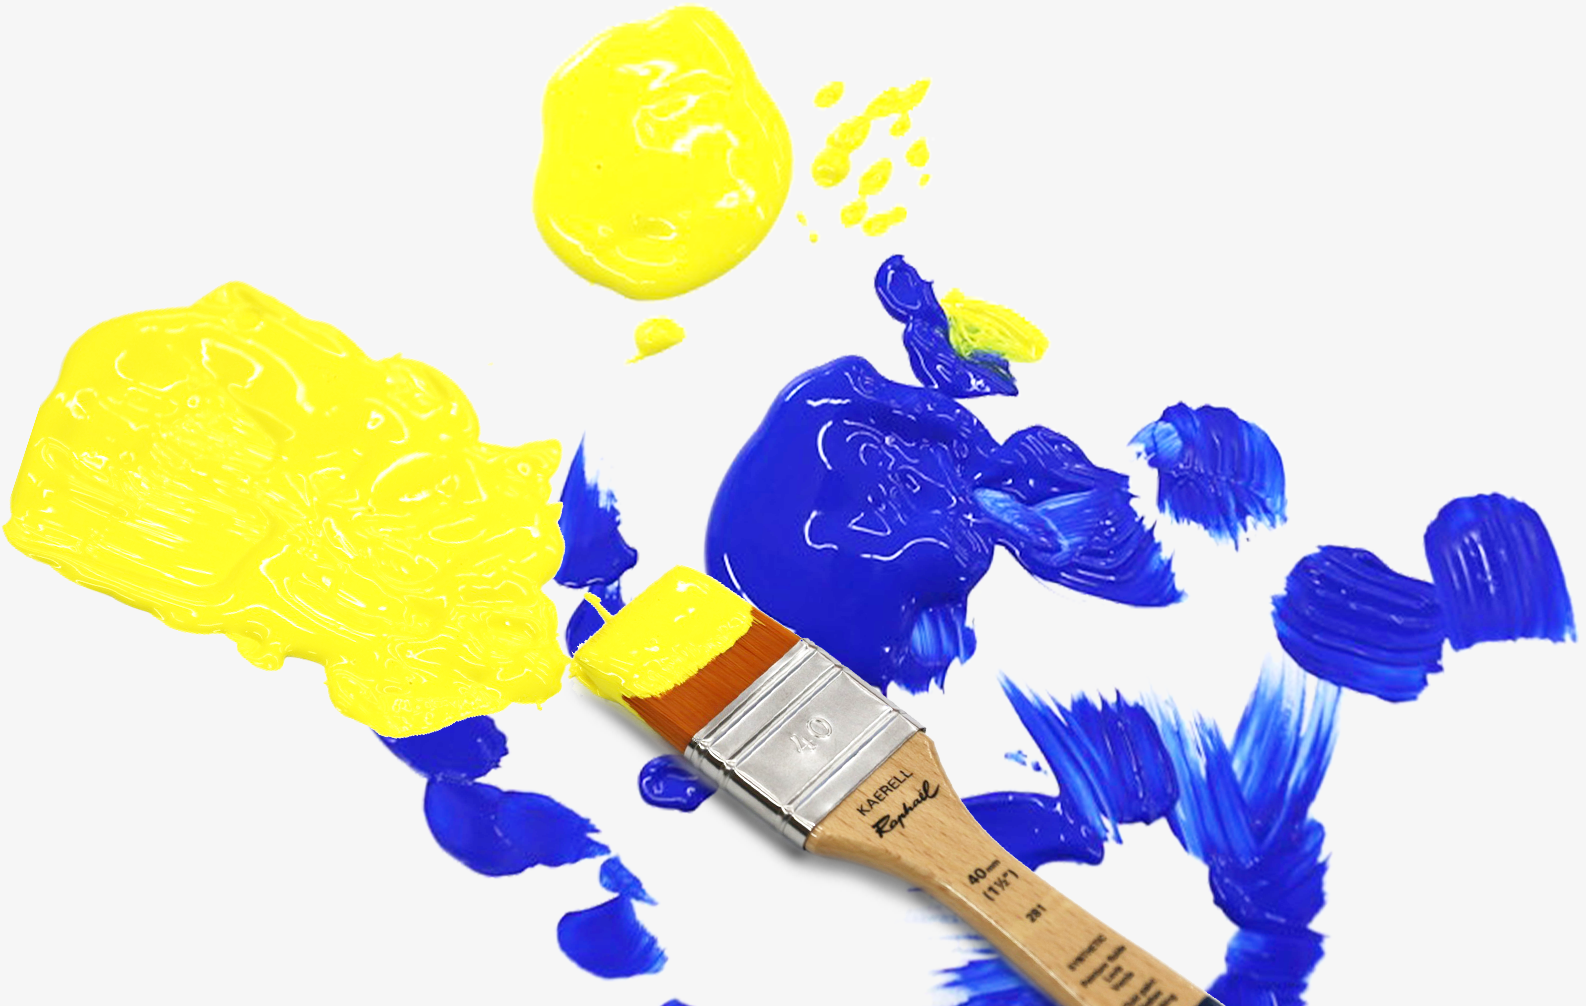 キャンバスに広がる青色と黄色の絵の具。筆には黄色の絵の具がついている。